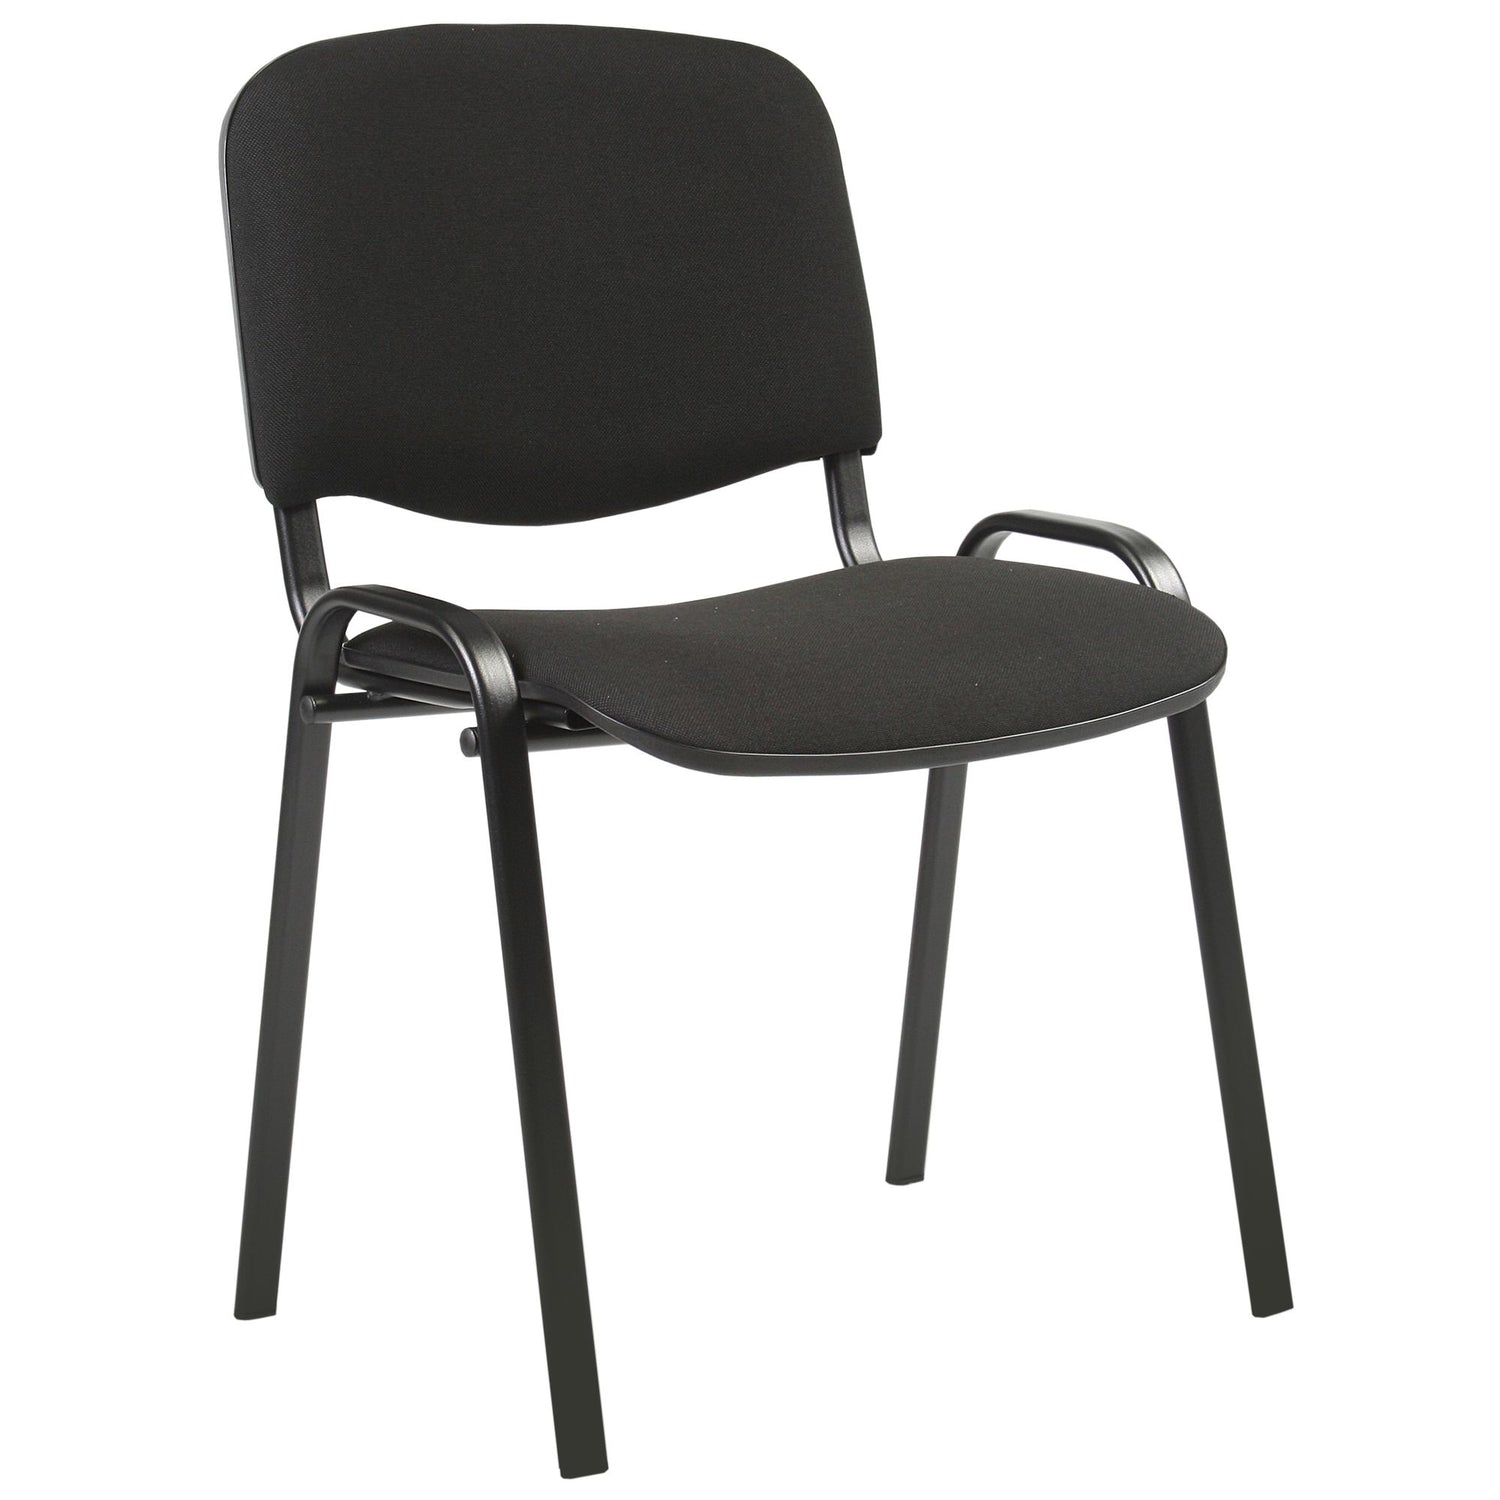 Lankytojų biuro kėdė, juodos spalvos, 54,5x42,5x82cm, 1 vnt. konferencijų salių kėdės